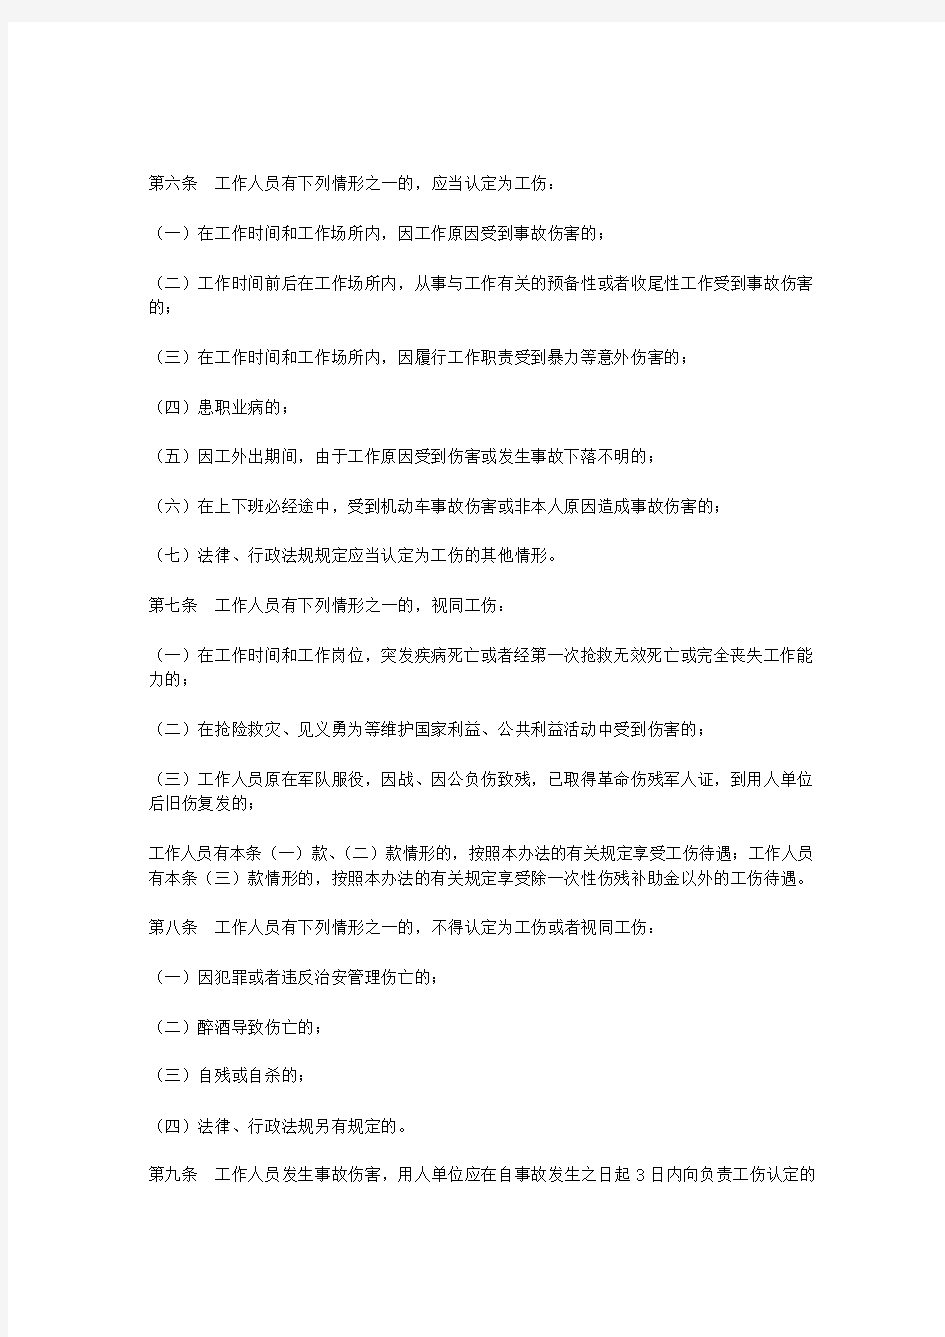 重庆市机关事业单位工作人员工伤管理暂行办法